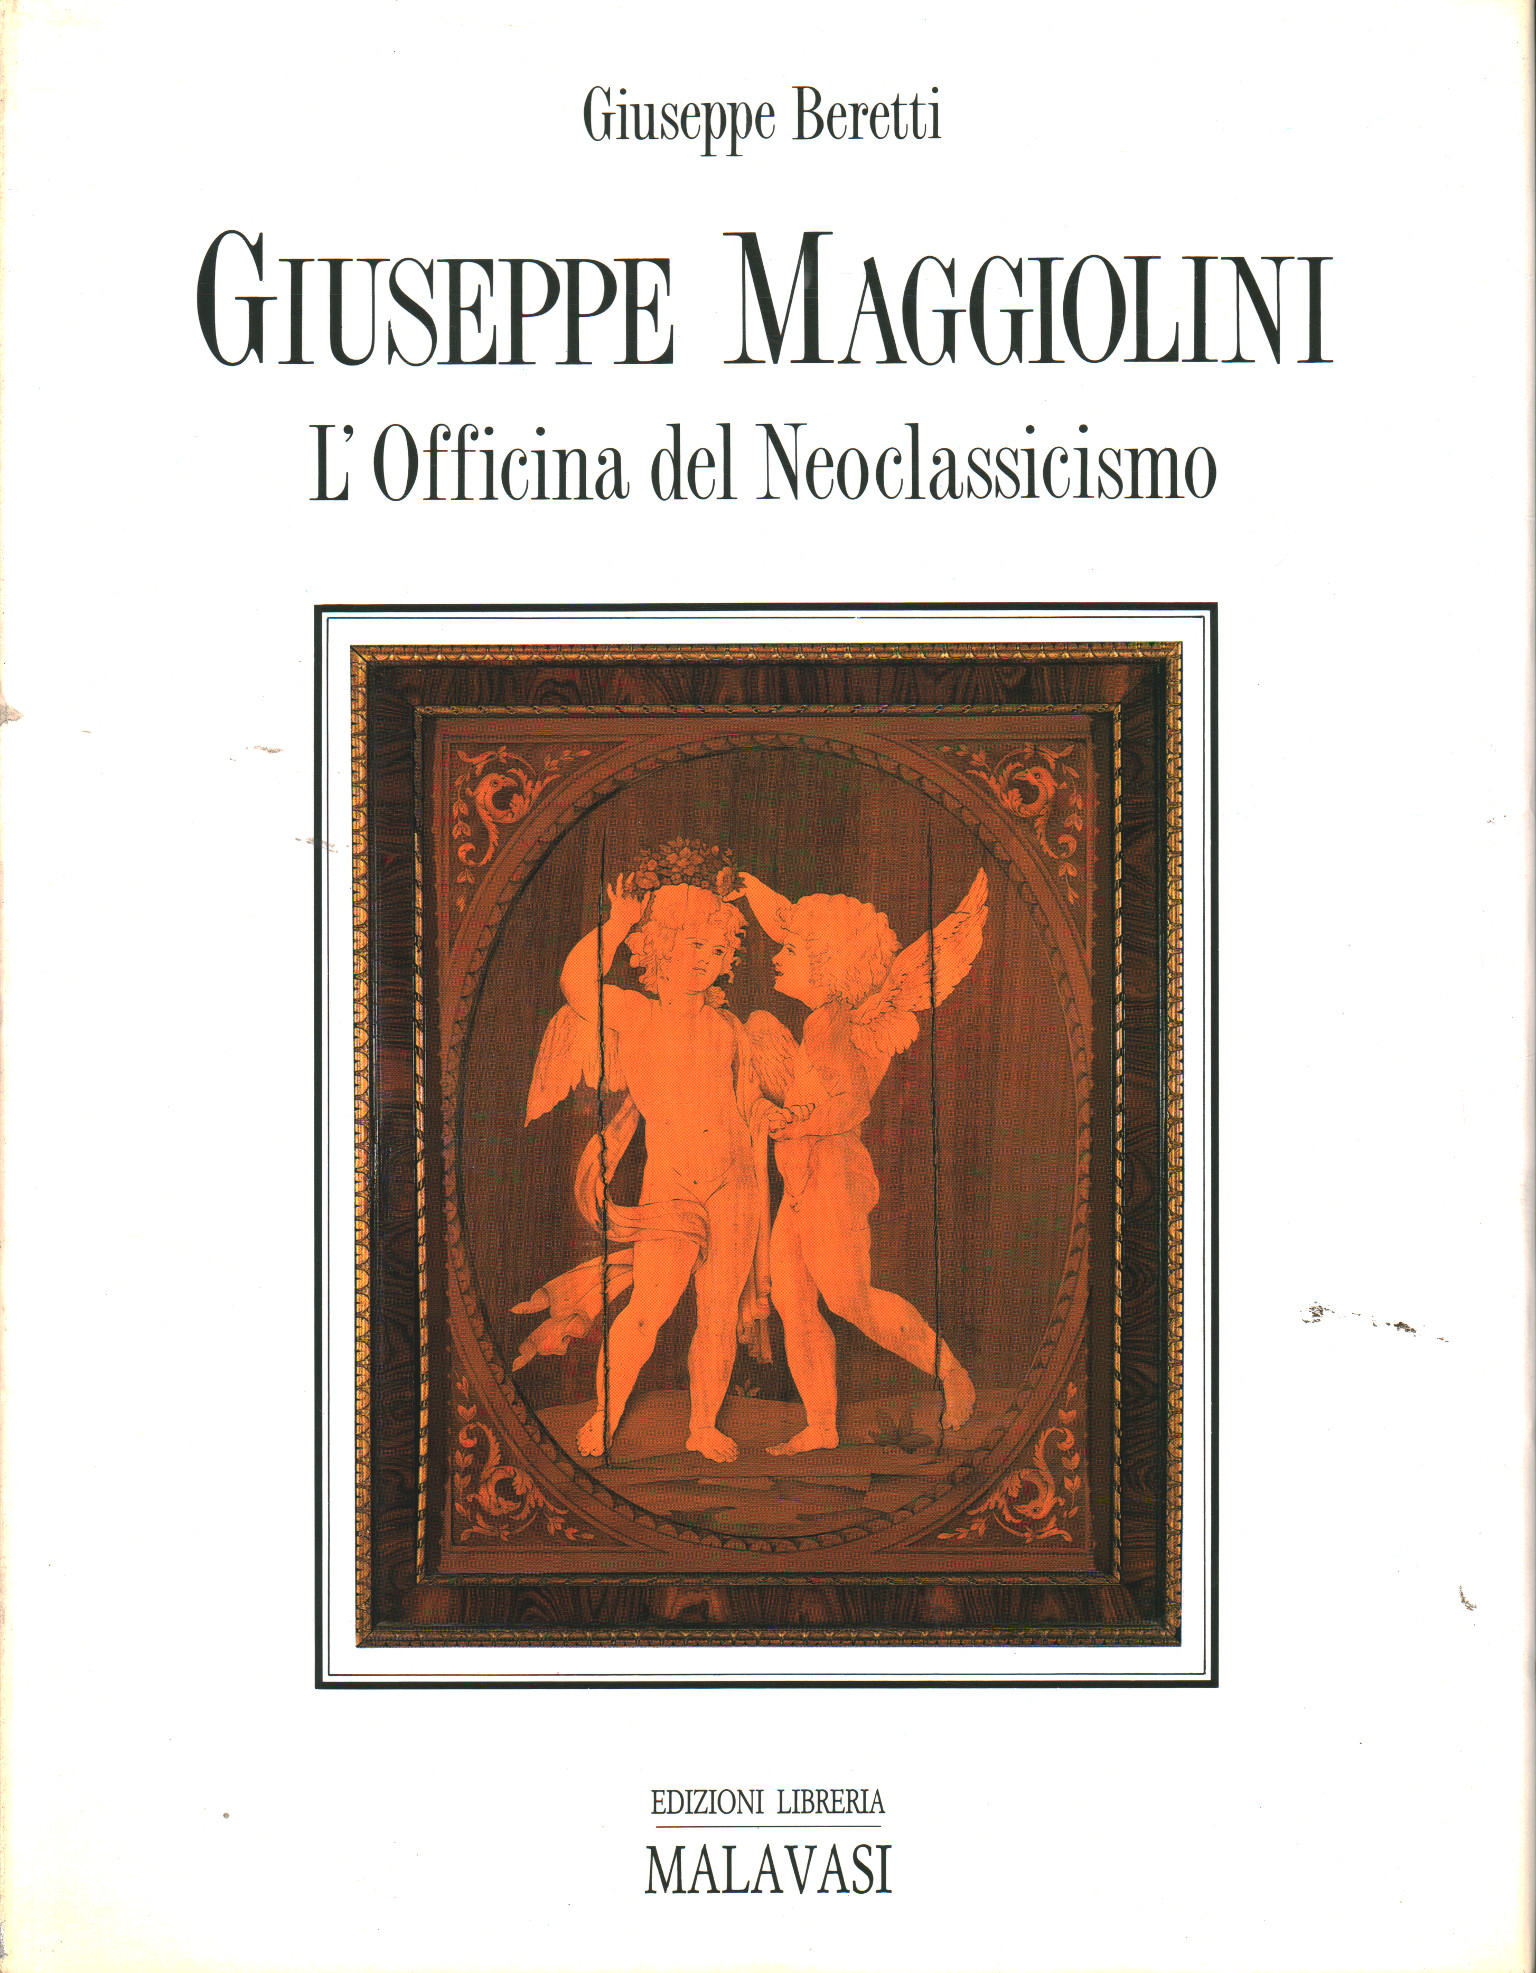 Giuseppe e Carlo Francesco Maggiolini, Giuseppe Beretti